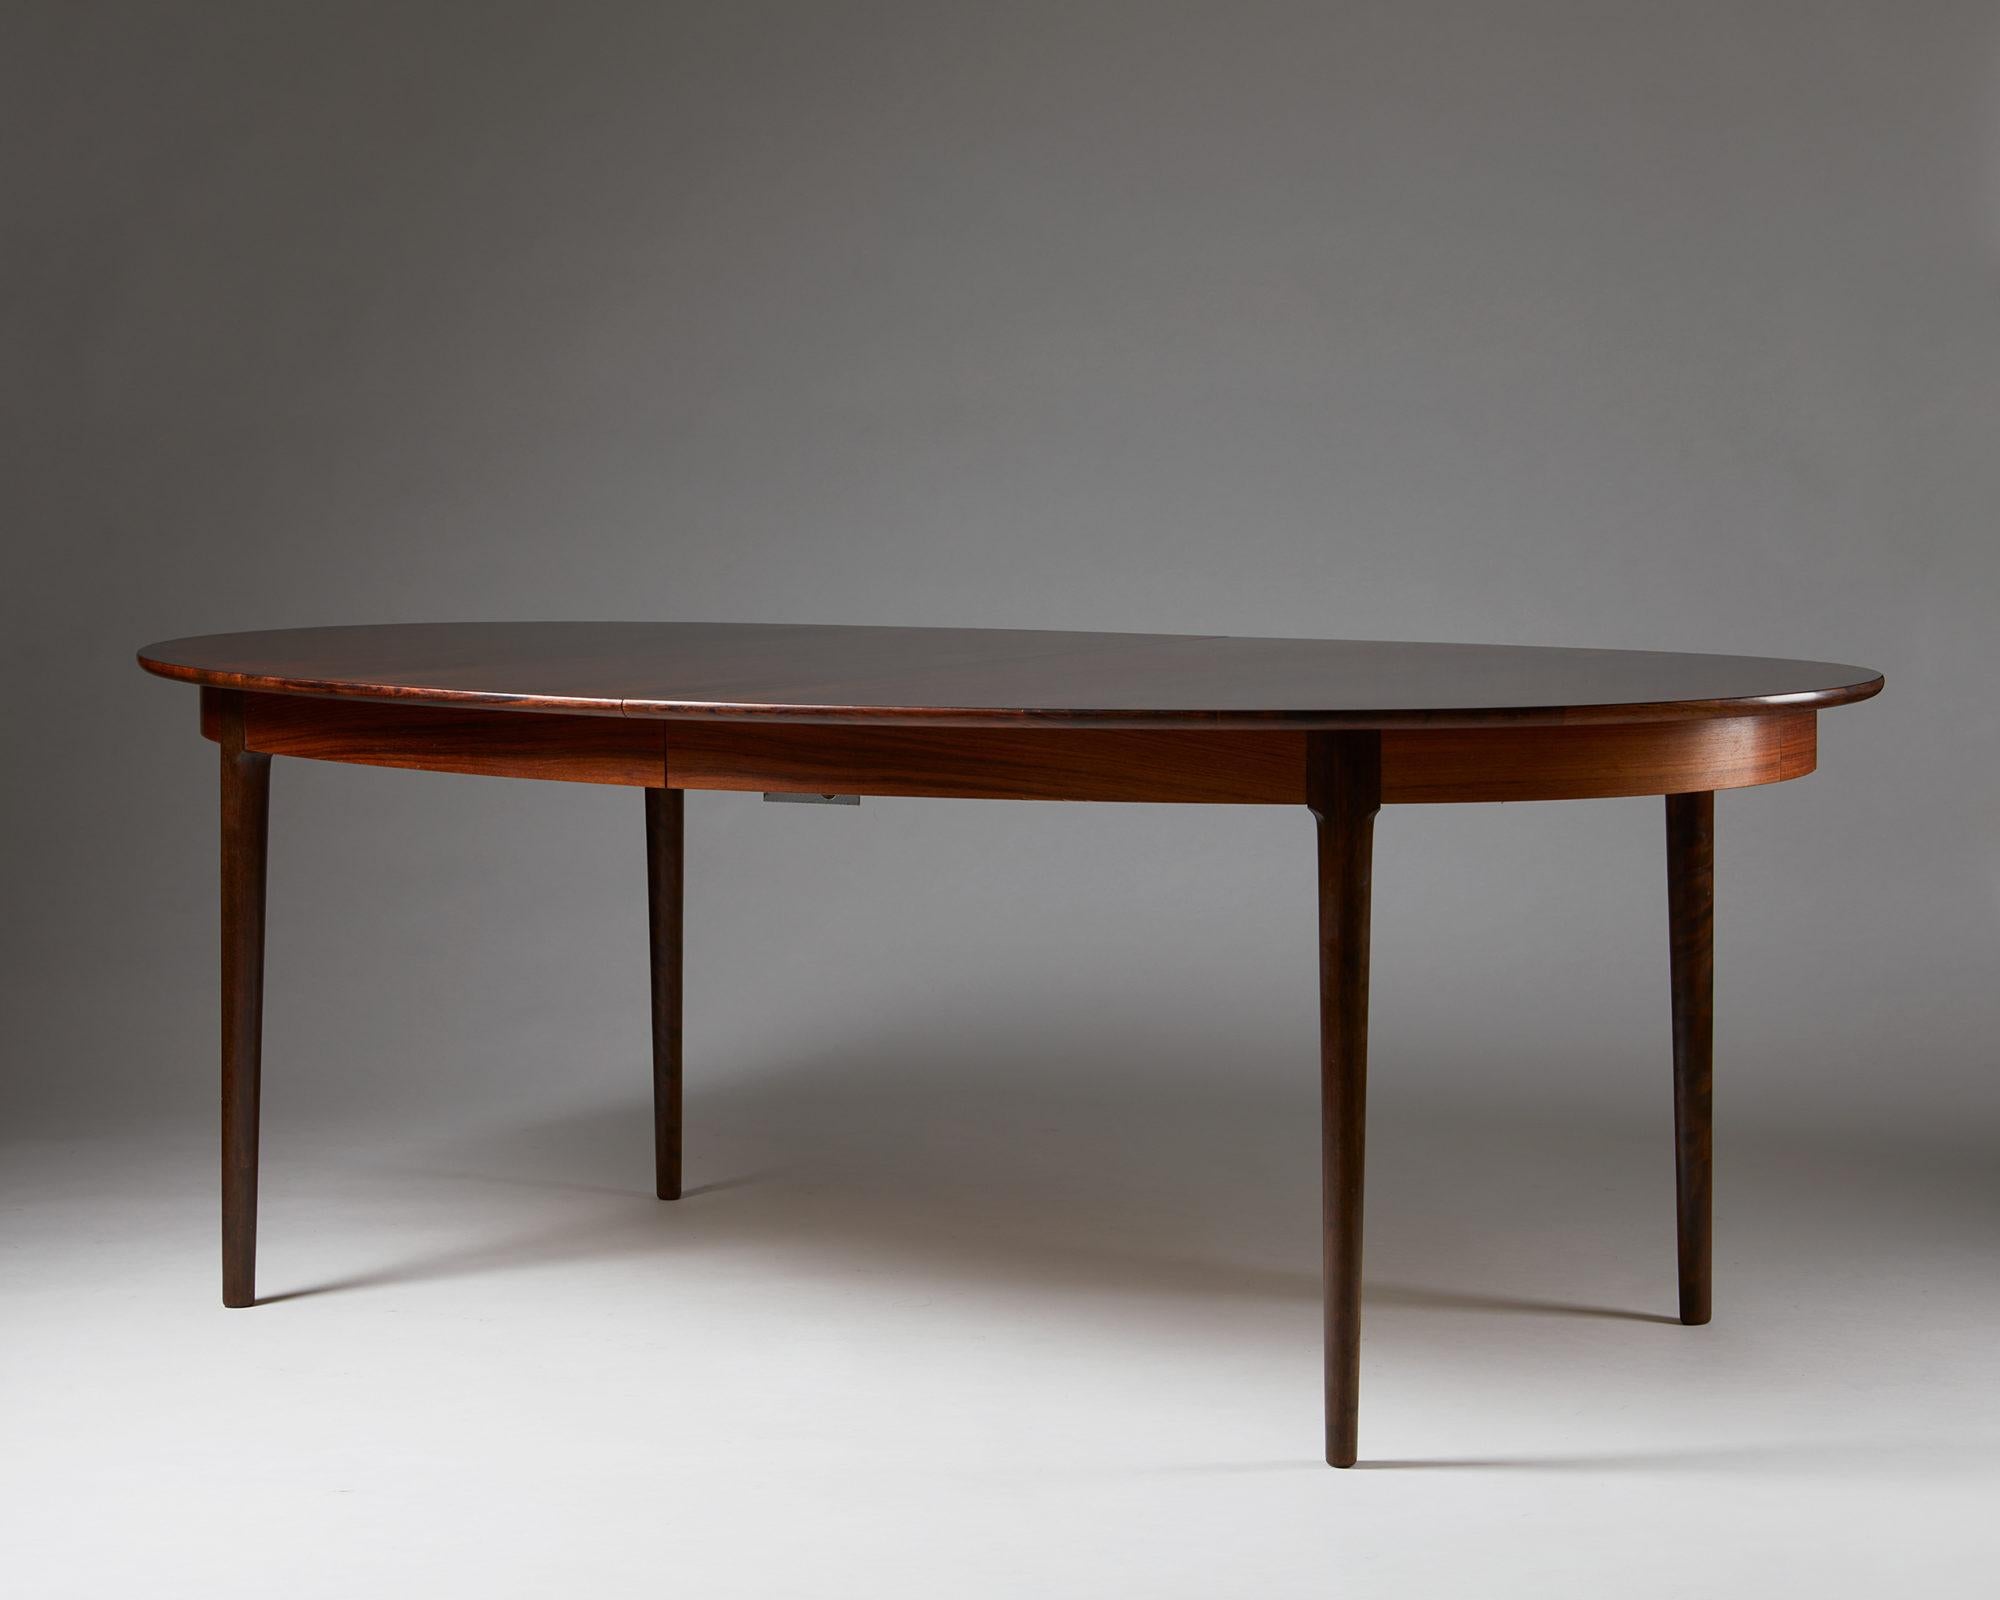 Table à manger, conçue par Torbjørn Afdal pour Bruksbo, Norvège, années 1950.
Palissandre brésilien. Avec cinq (5) feuilles d'extension.

Mesures : H 73.5 cm/ 2' 5 1/2